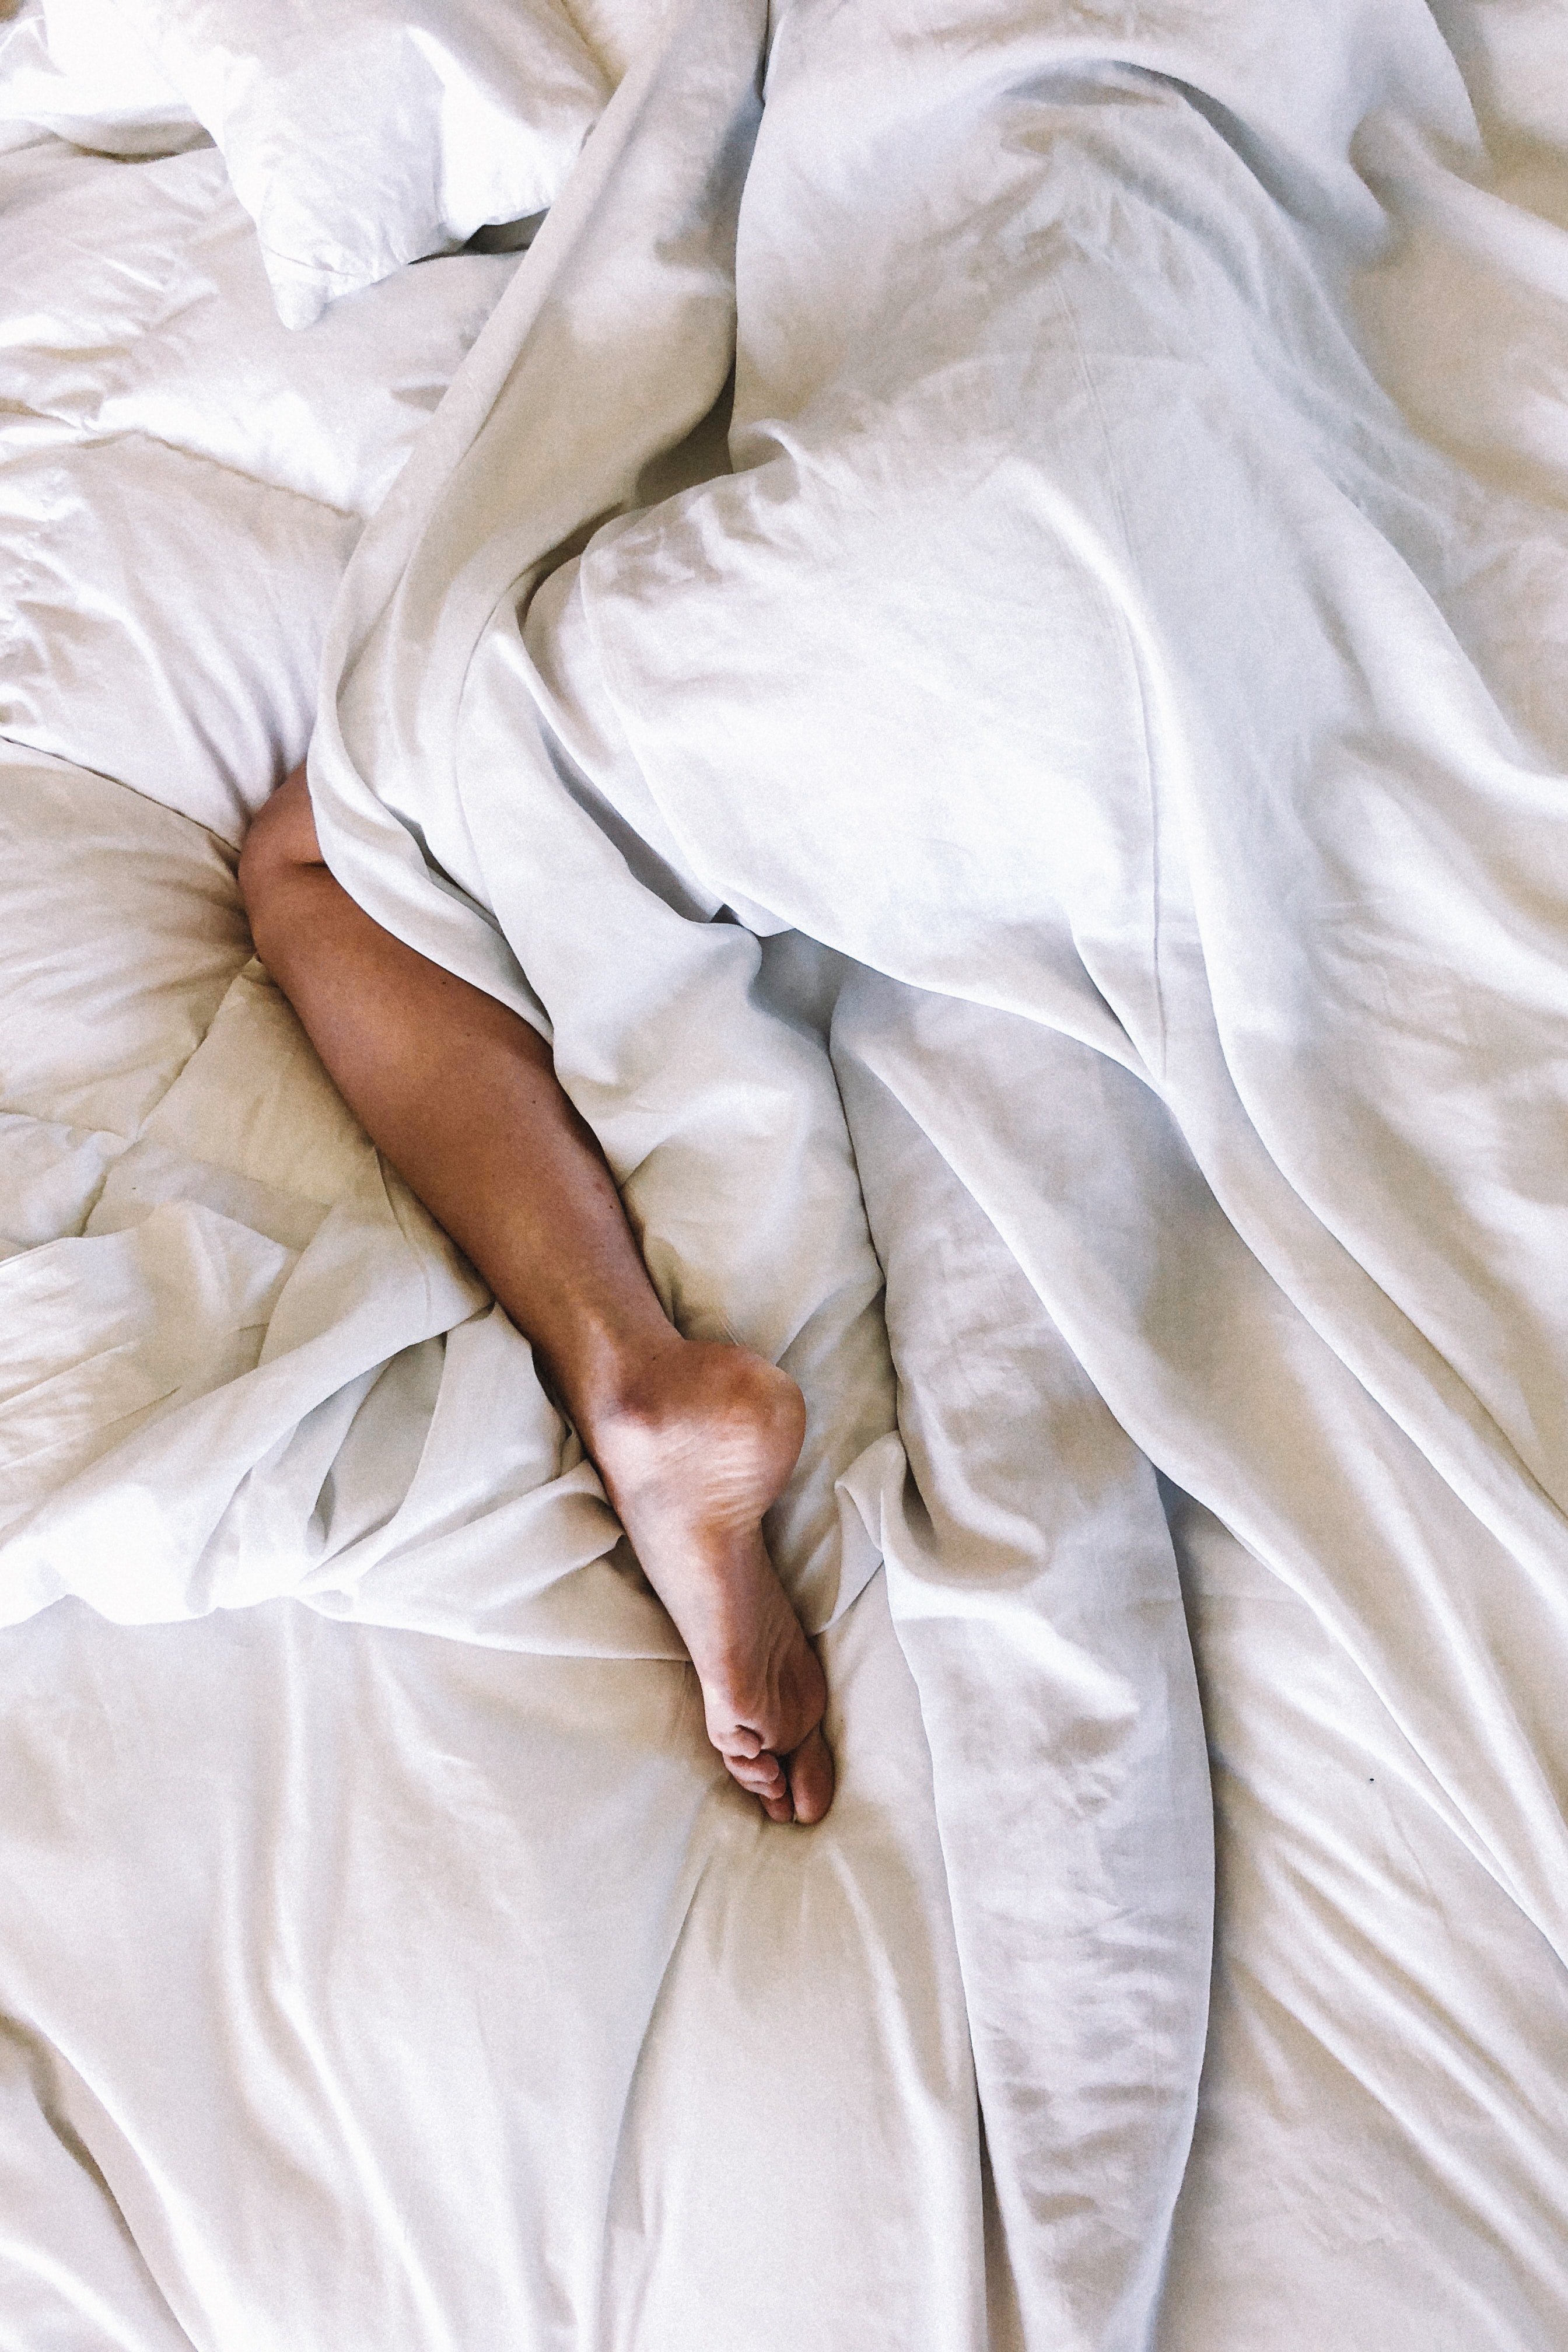 Woman's legs in bed | Unsplash